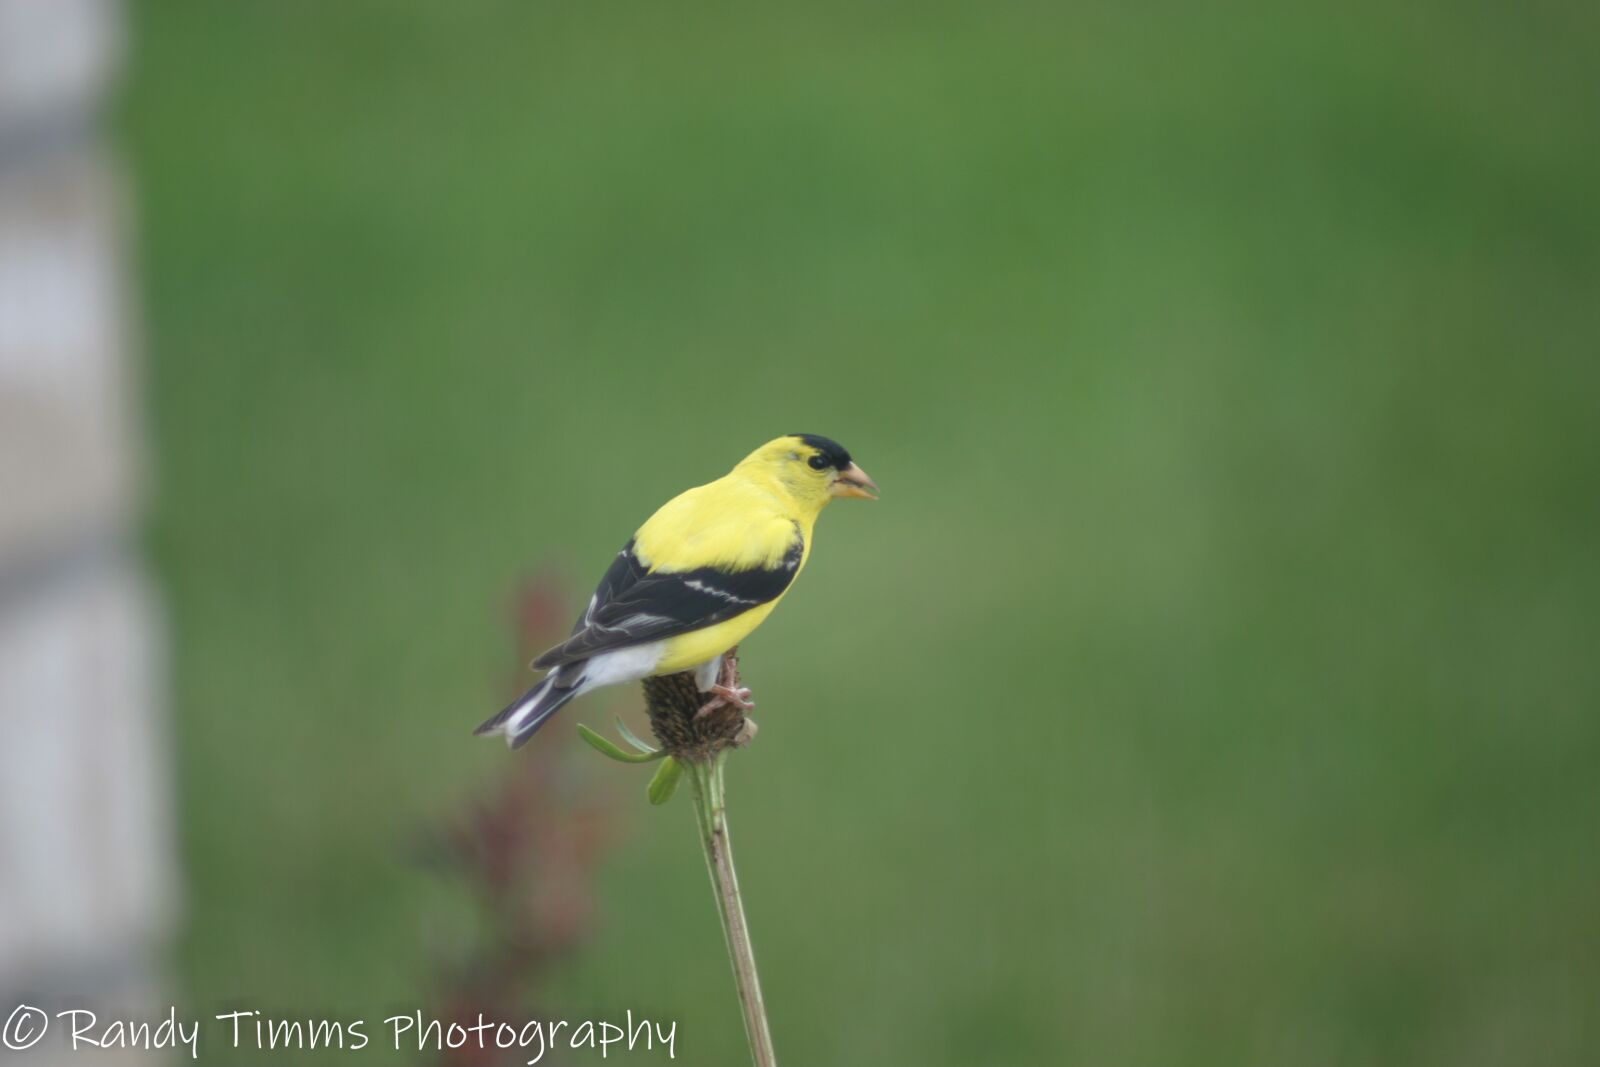 Canon EOS 10D sample photo. Yellow finch, birds, wildlife photography